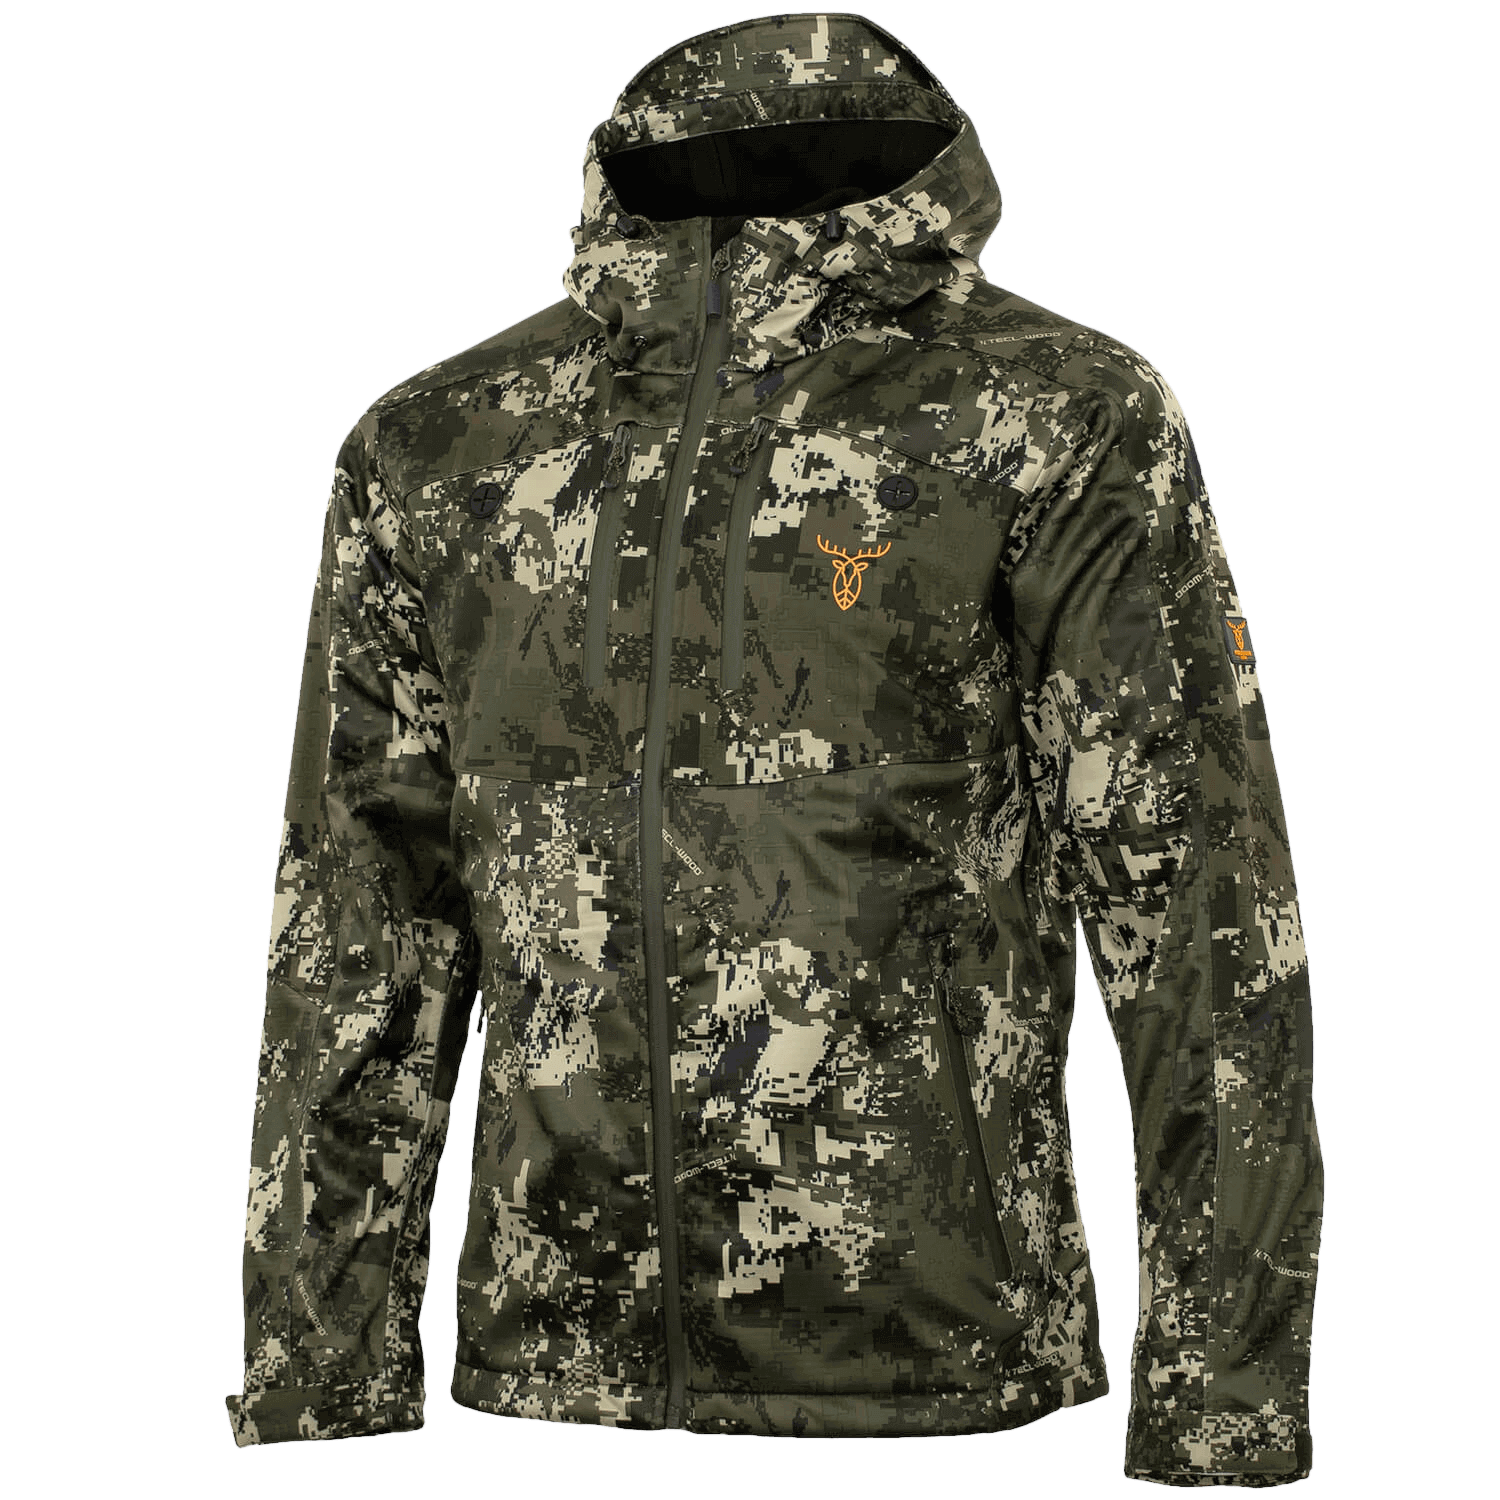 Pirscher Gear Allseason Jacket (Optimax) - Hunting Jackets